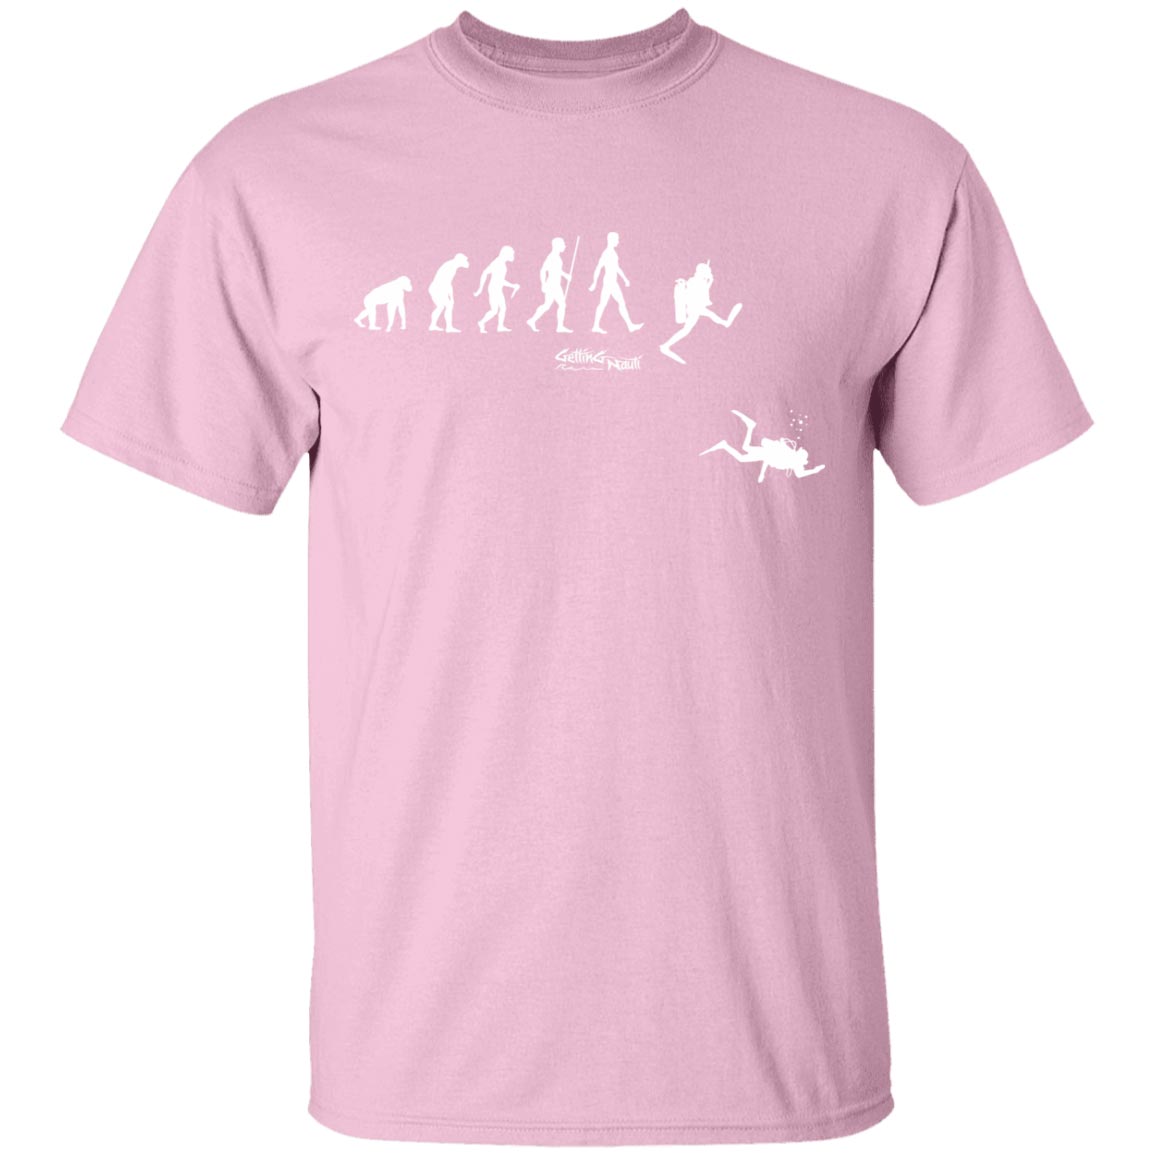 SCUBA Evolution - Cotton T-Shirt